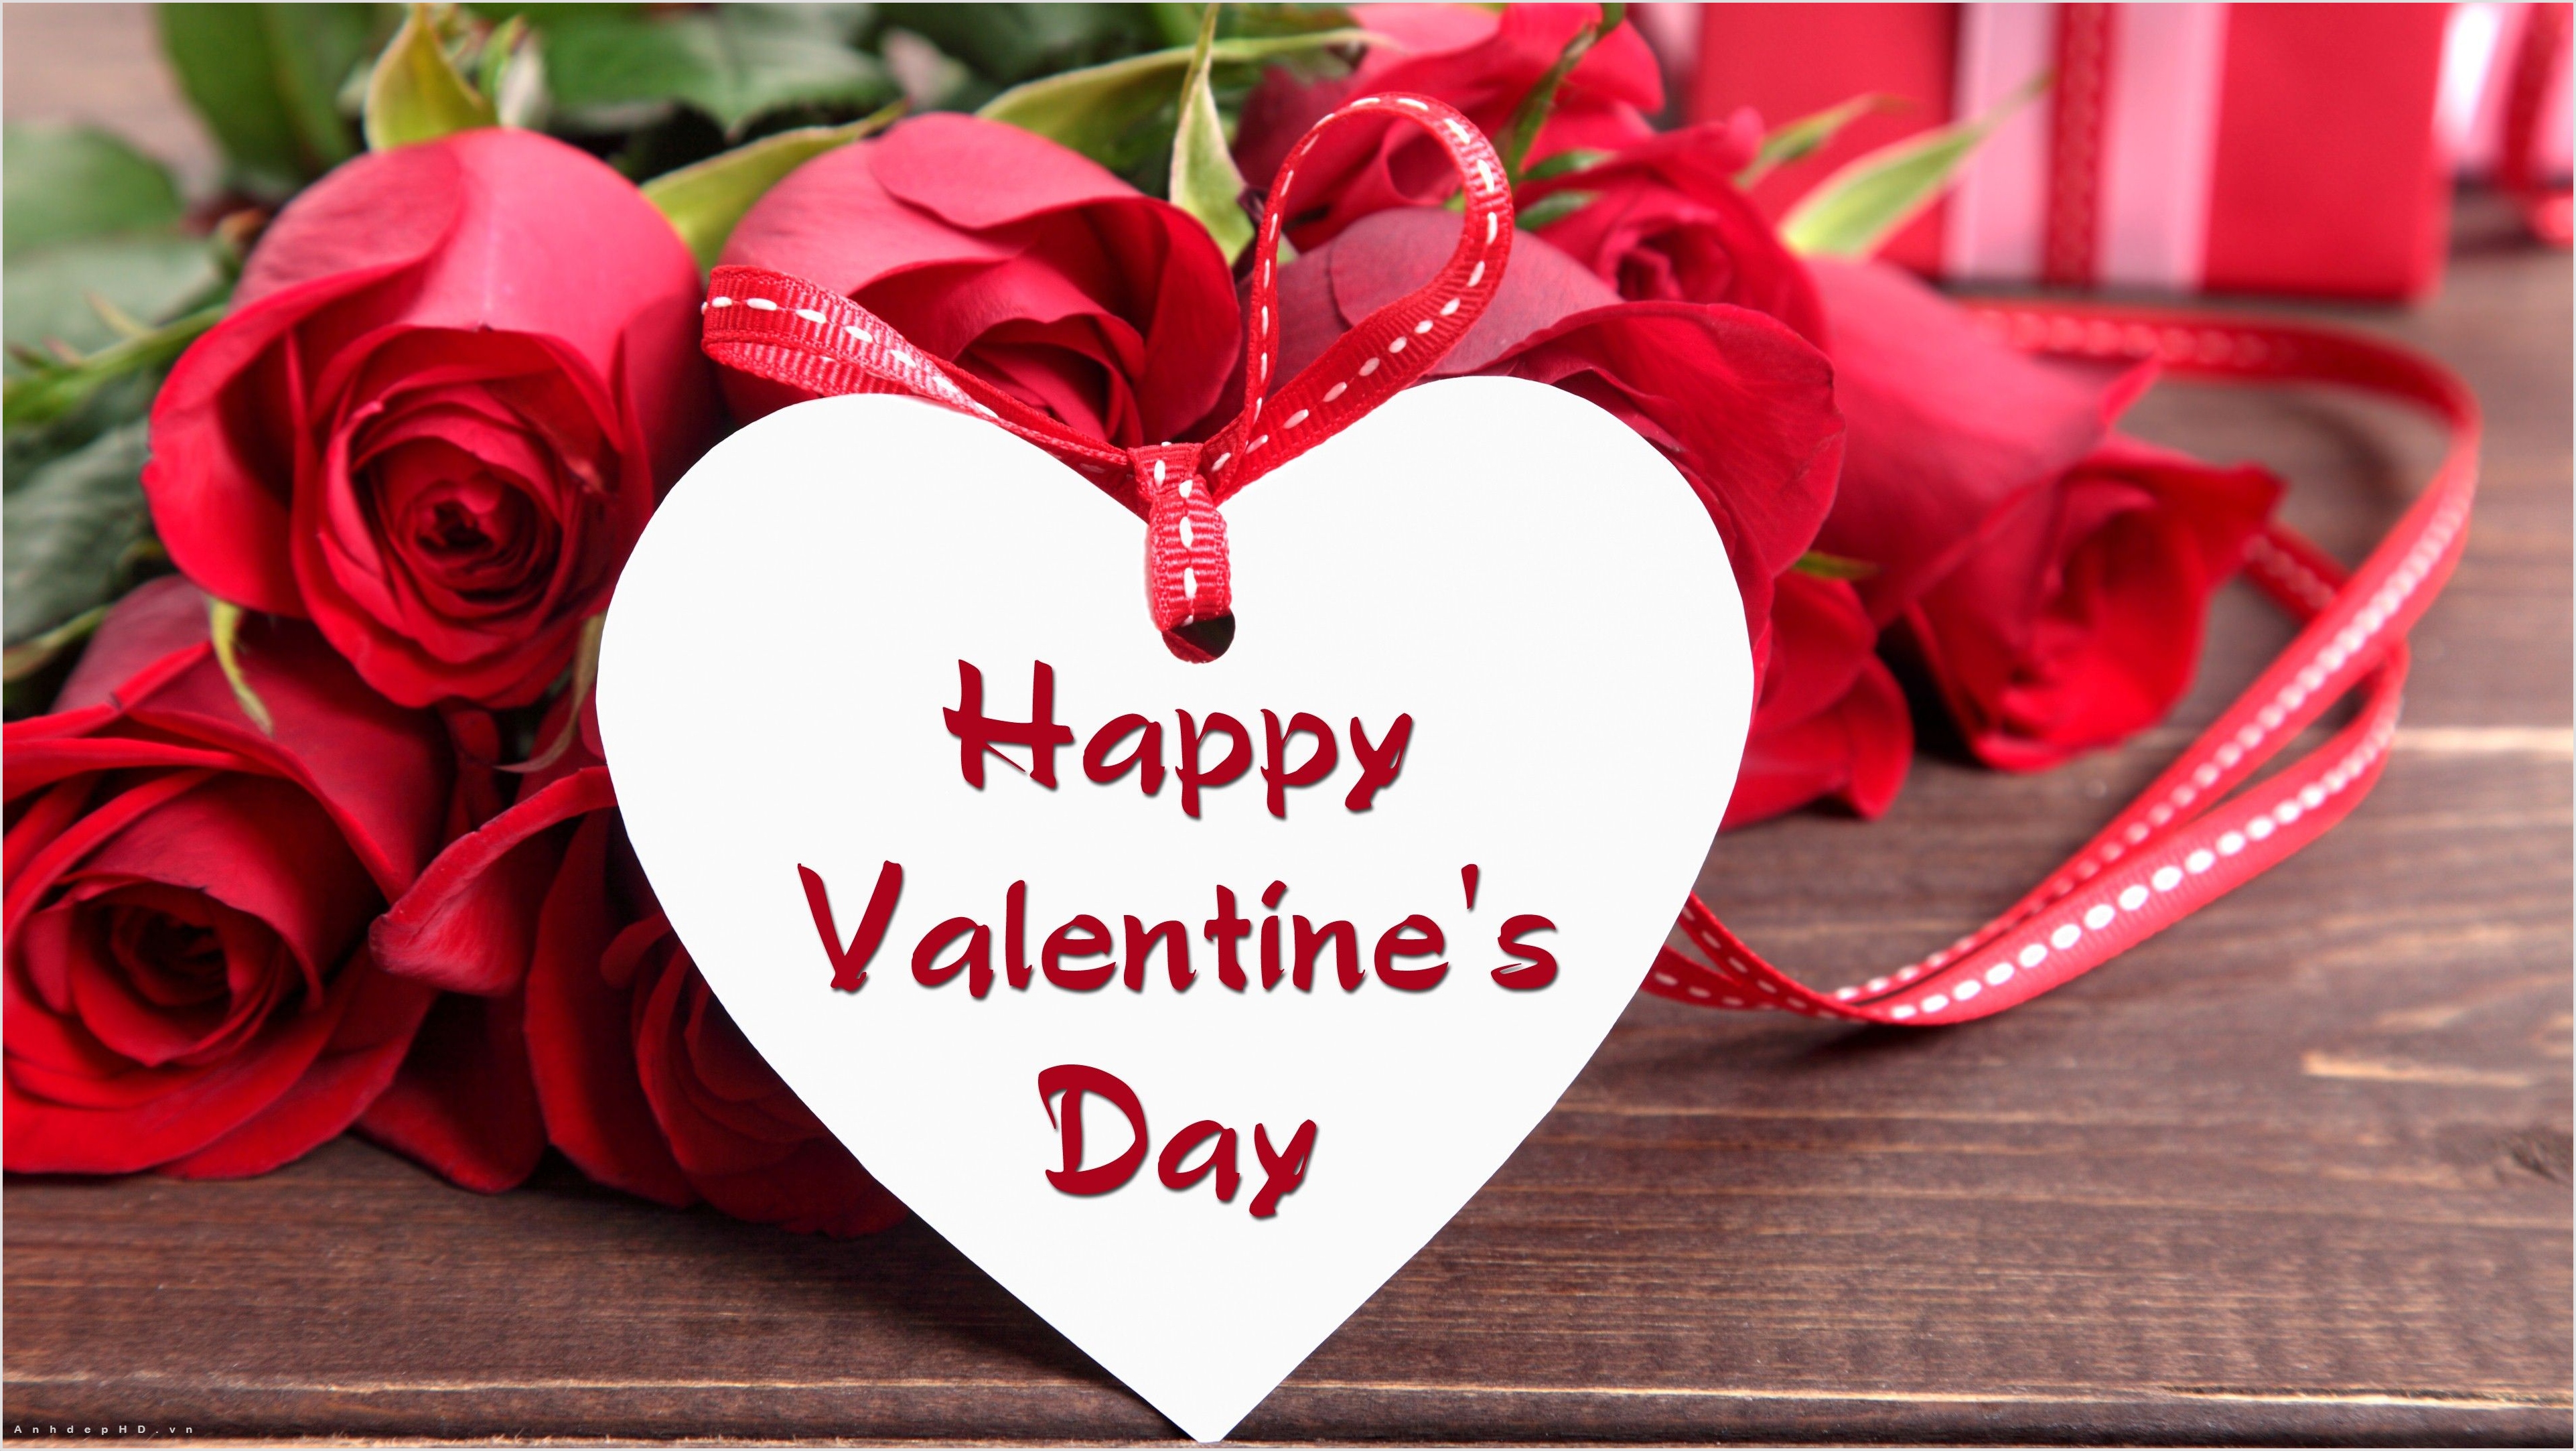 Ngày Valentine đang đến gần! Hãy cùng chúng tôi tìm những hình ảnh tuyệt đẹp để tặng người thân yêu của bạn trong dịp này nhé!